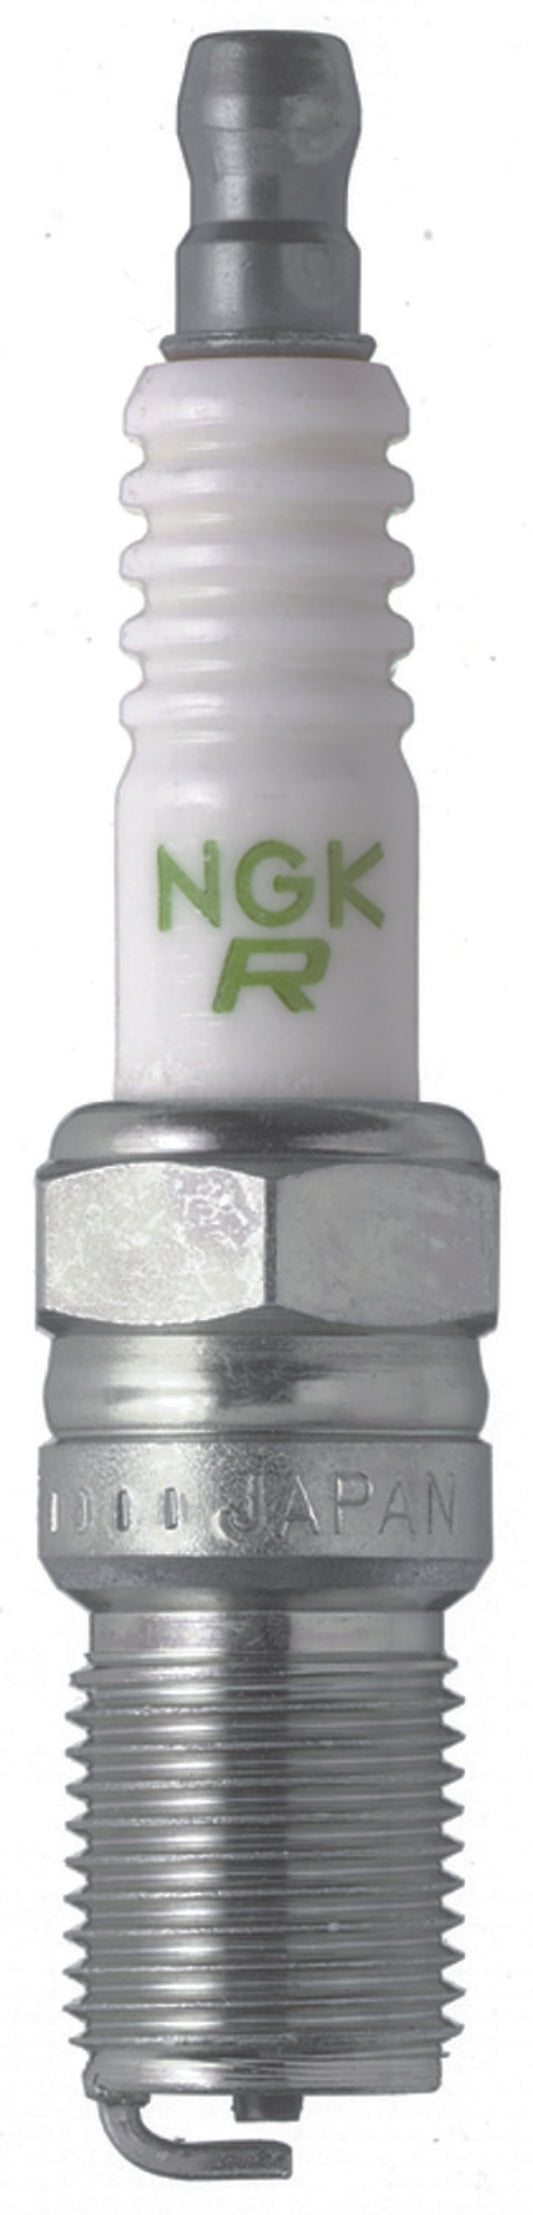 NGK Nickel Spark Plug Box of 10 (BR7EF)